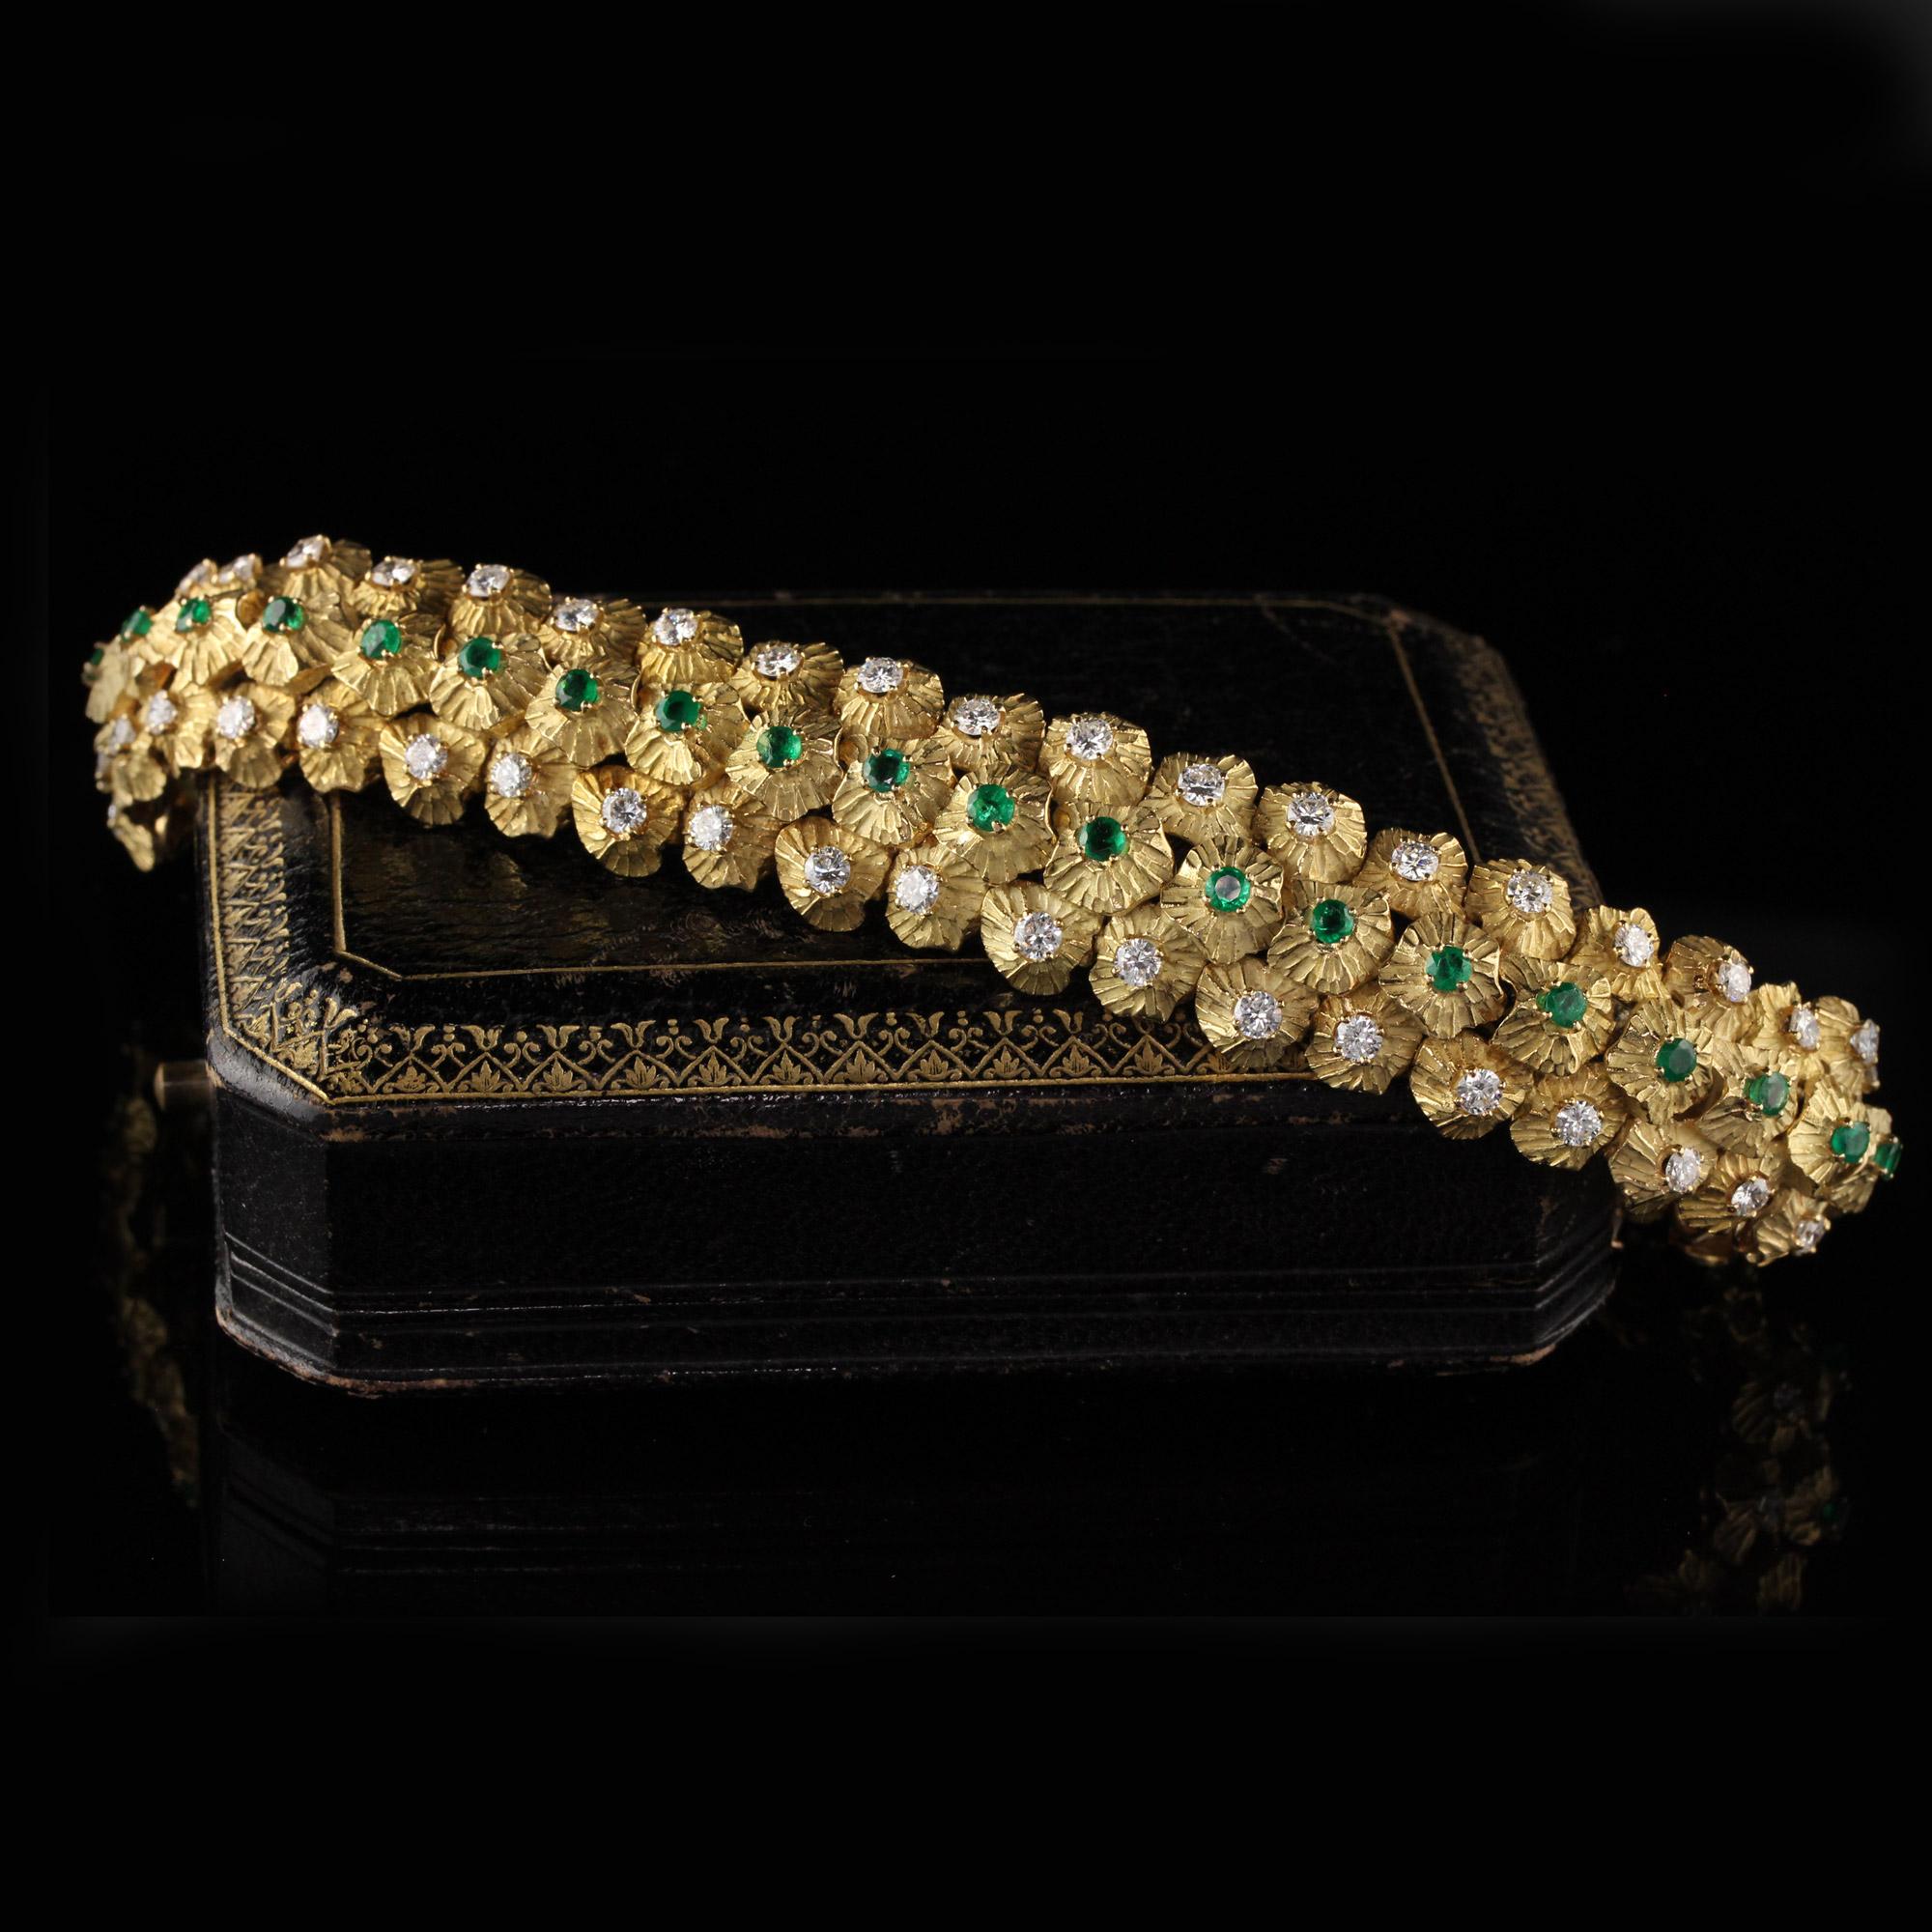 Stunning Vintage 18K yellow gold diamond & emerald bracelet. 

#B0020

Metal: 18K Yellow Gold 

Weight: 67.7 Grams

Total Diamond Weight - Approximately 5.75 CTS

Diamond Color - G - H

Diamond Clarity - VS2

Total Emerald Weight - Approximately